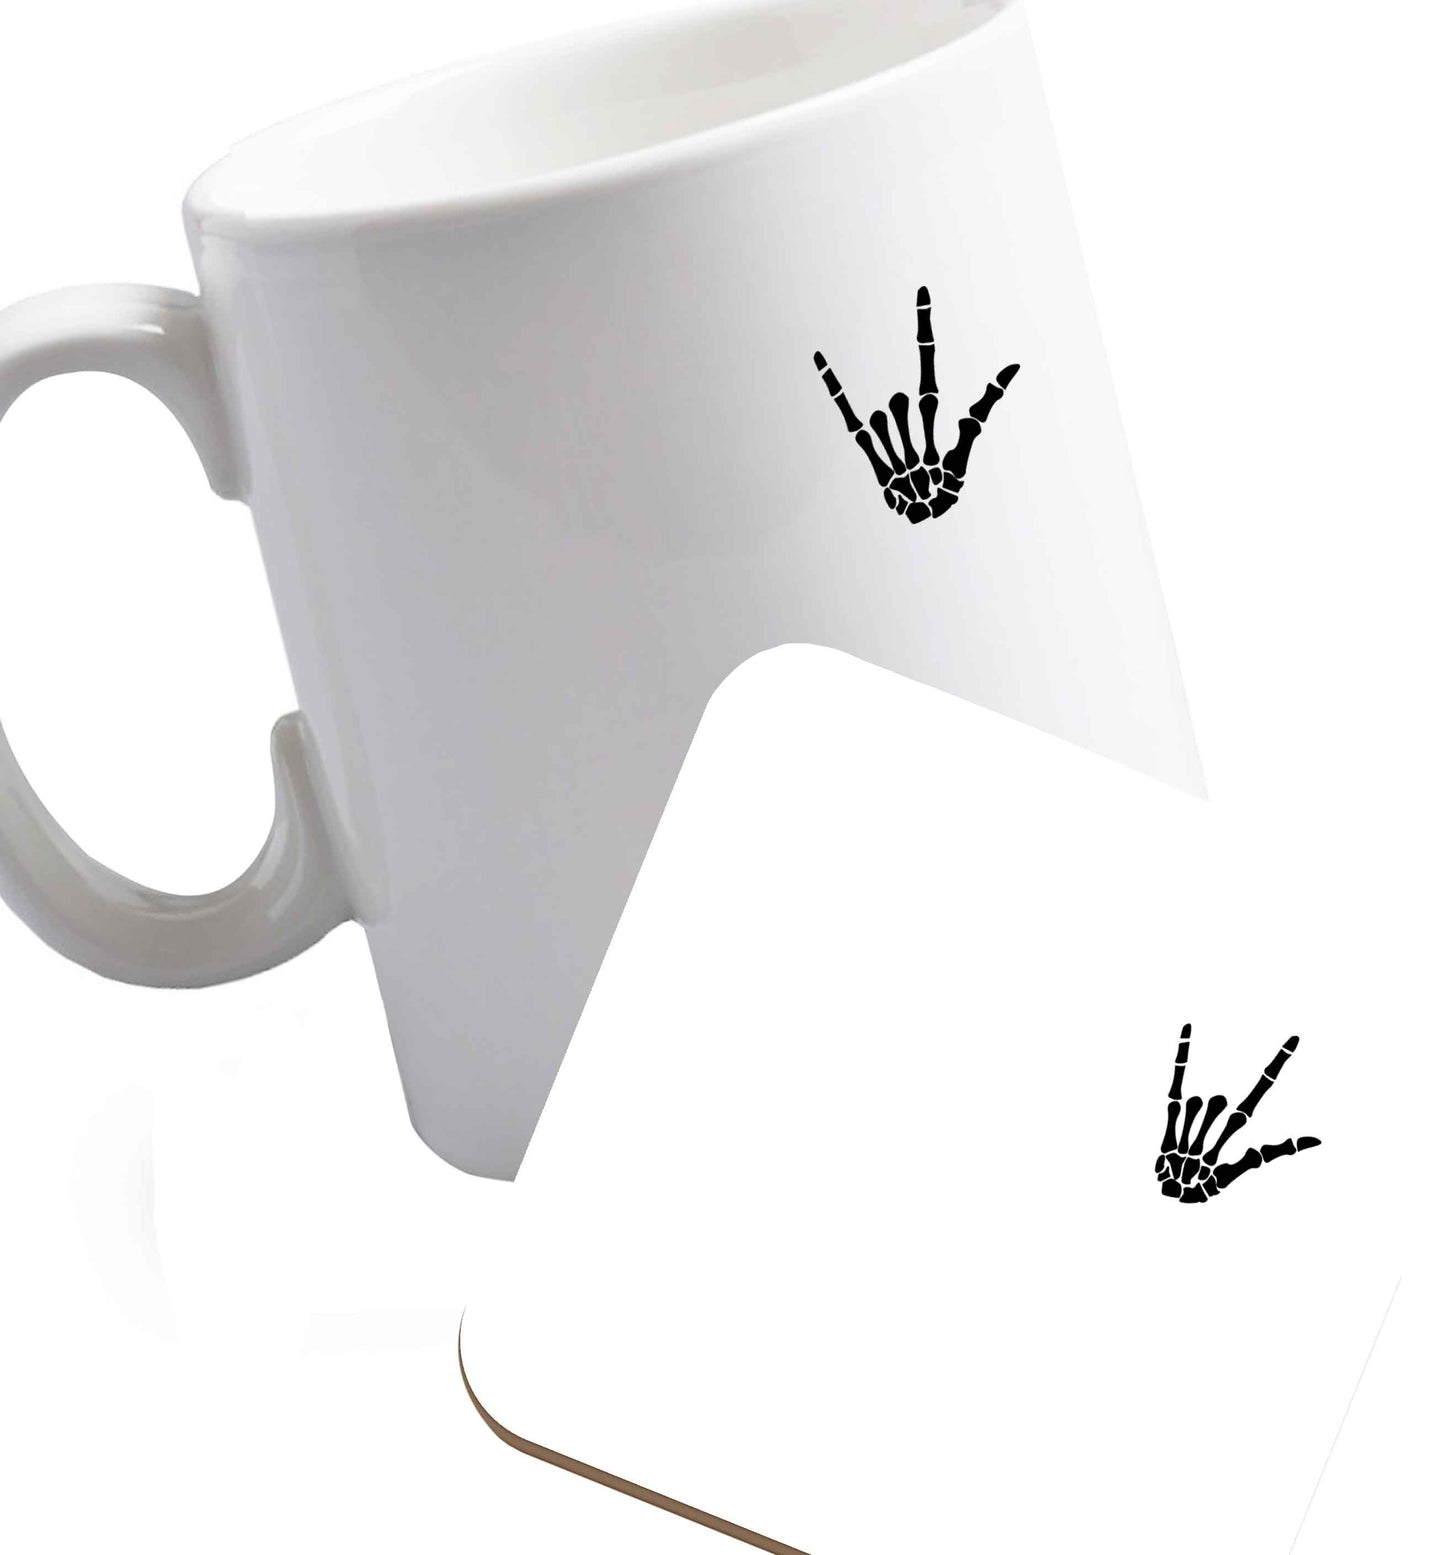 10 oz Favourite Type Pan Pancake ceramic mug and coaster set right handed